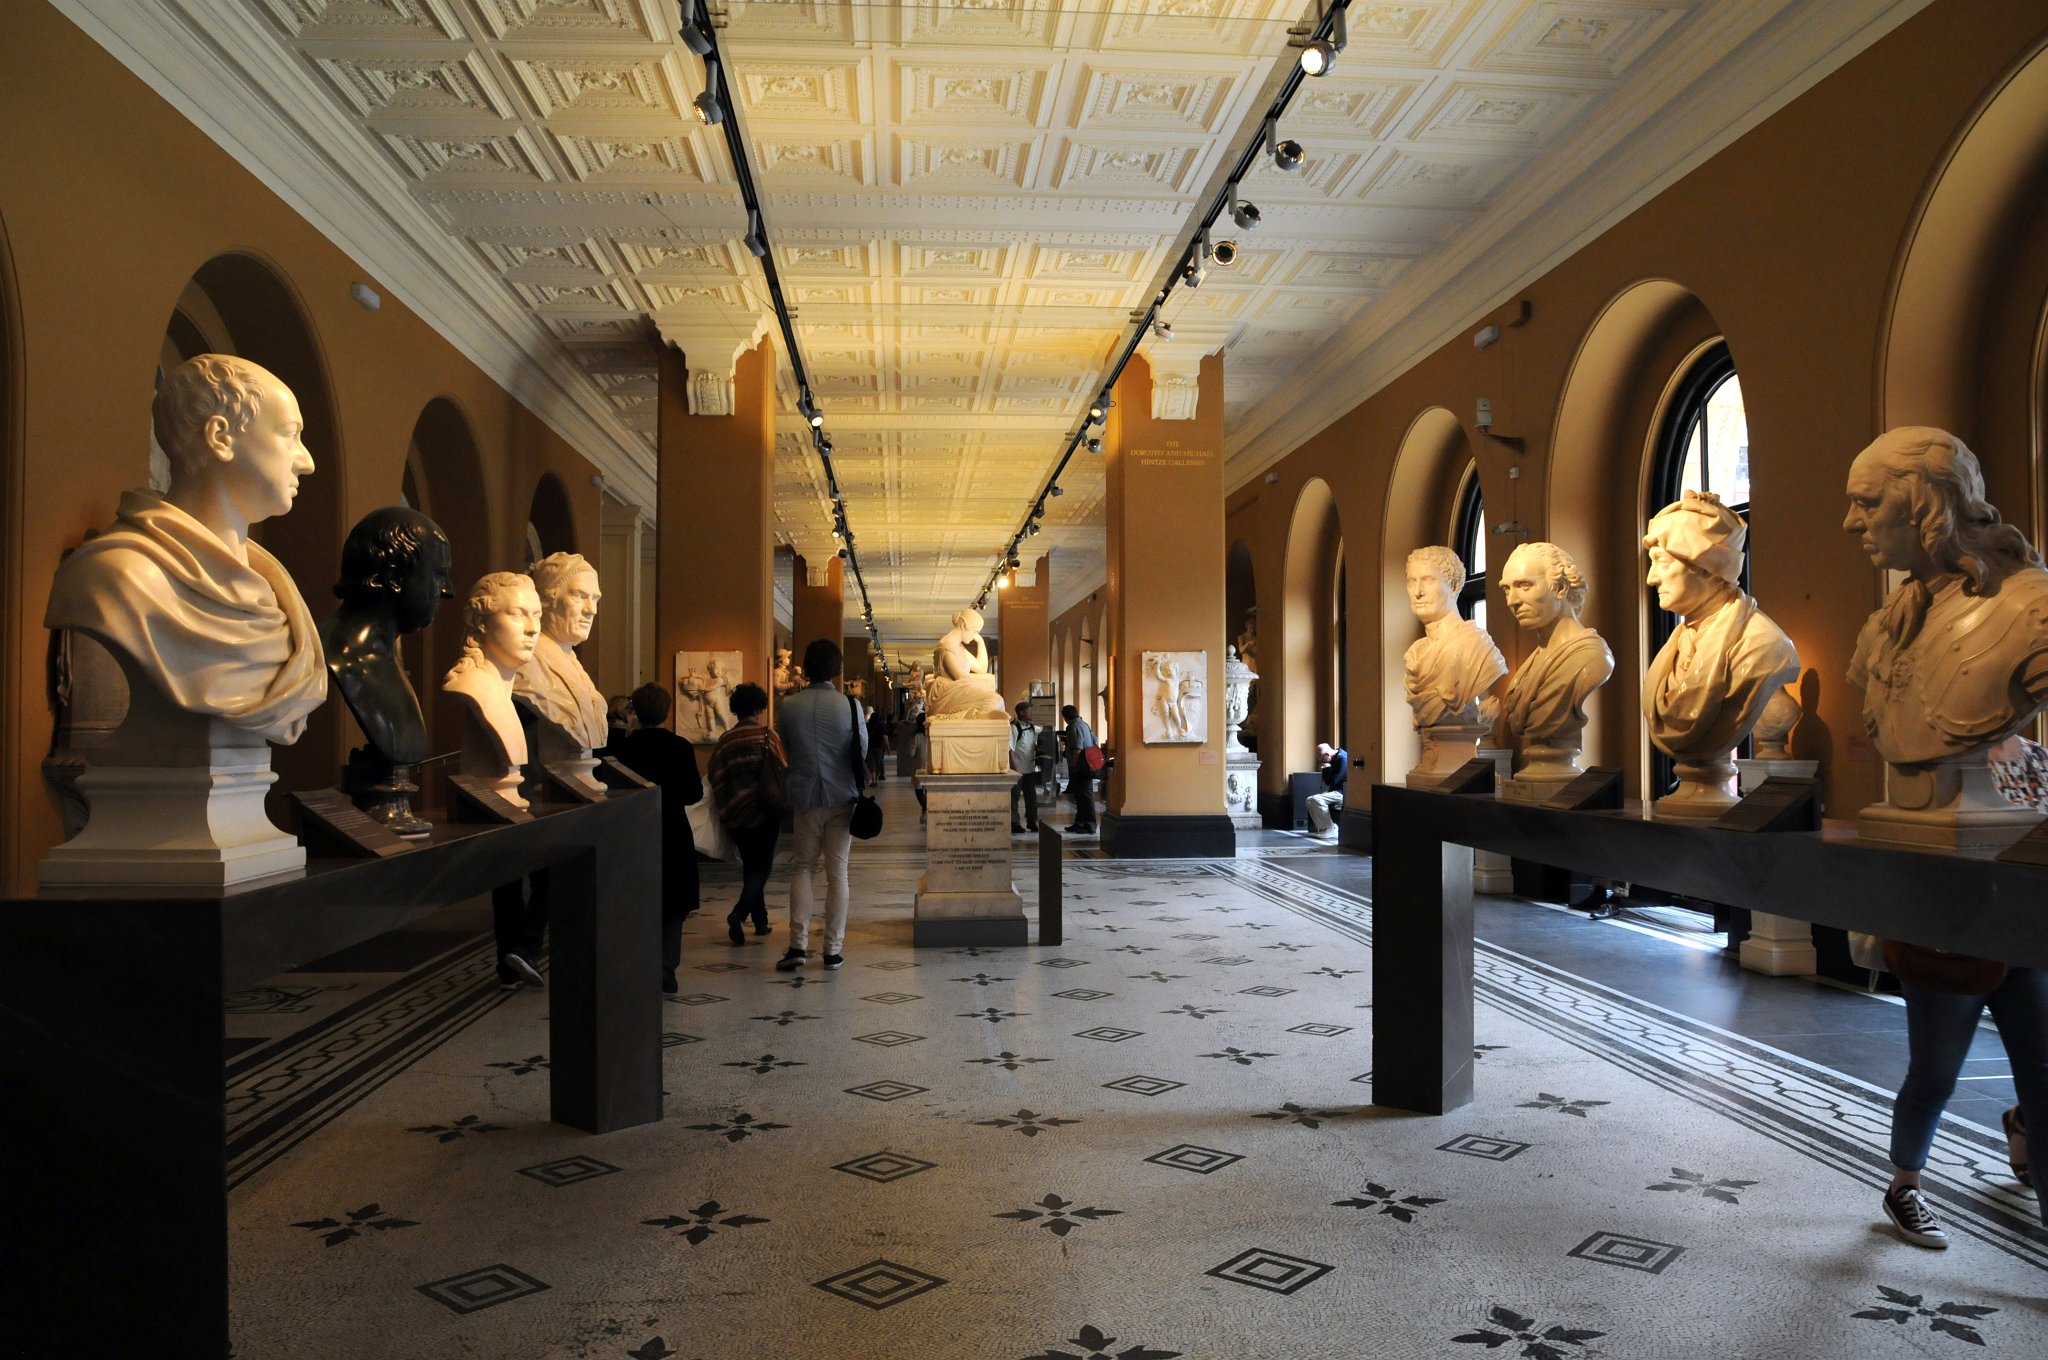 DSC_8013_1.jpg - Budova muzea se rozkládá na ploše 45 000 m², obsahuje 145 výstavních sálů a 4 milióny předmětů.